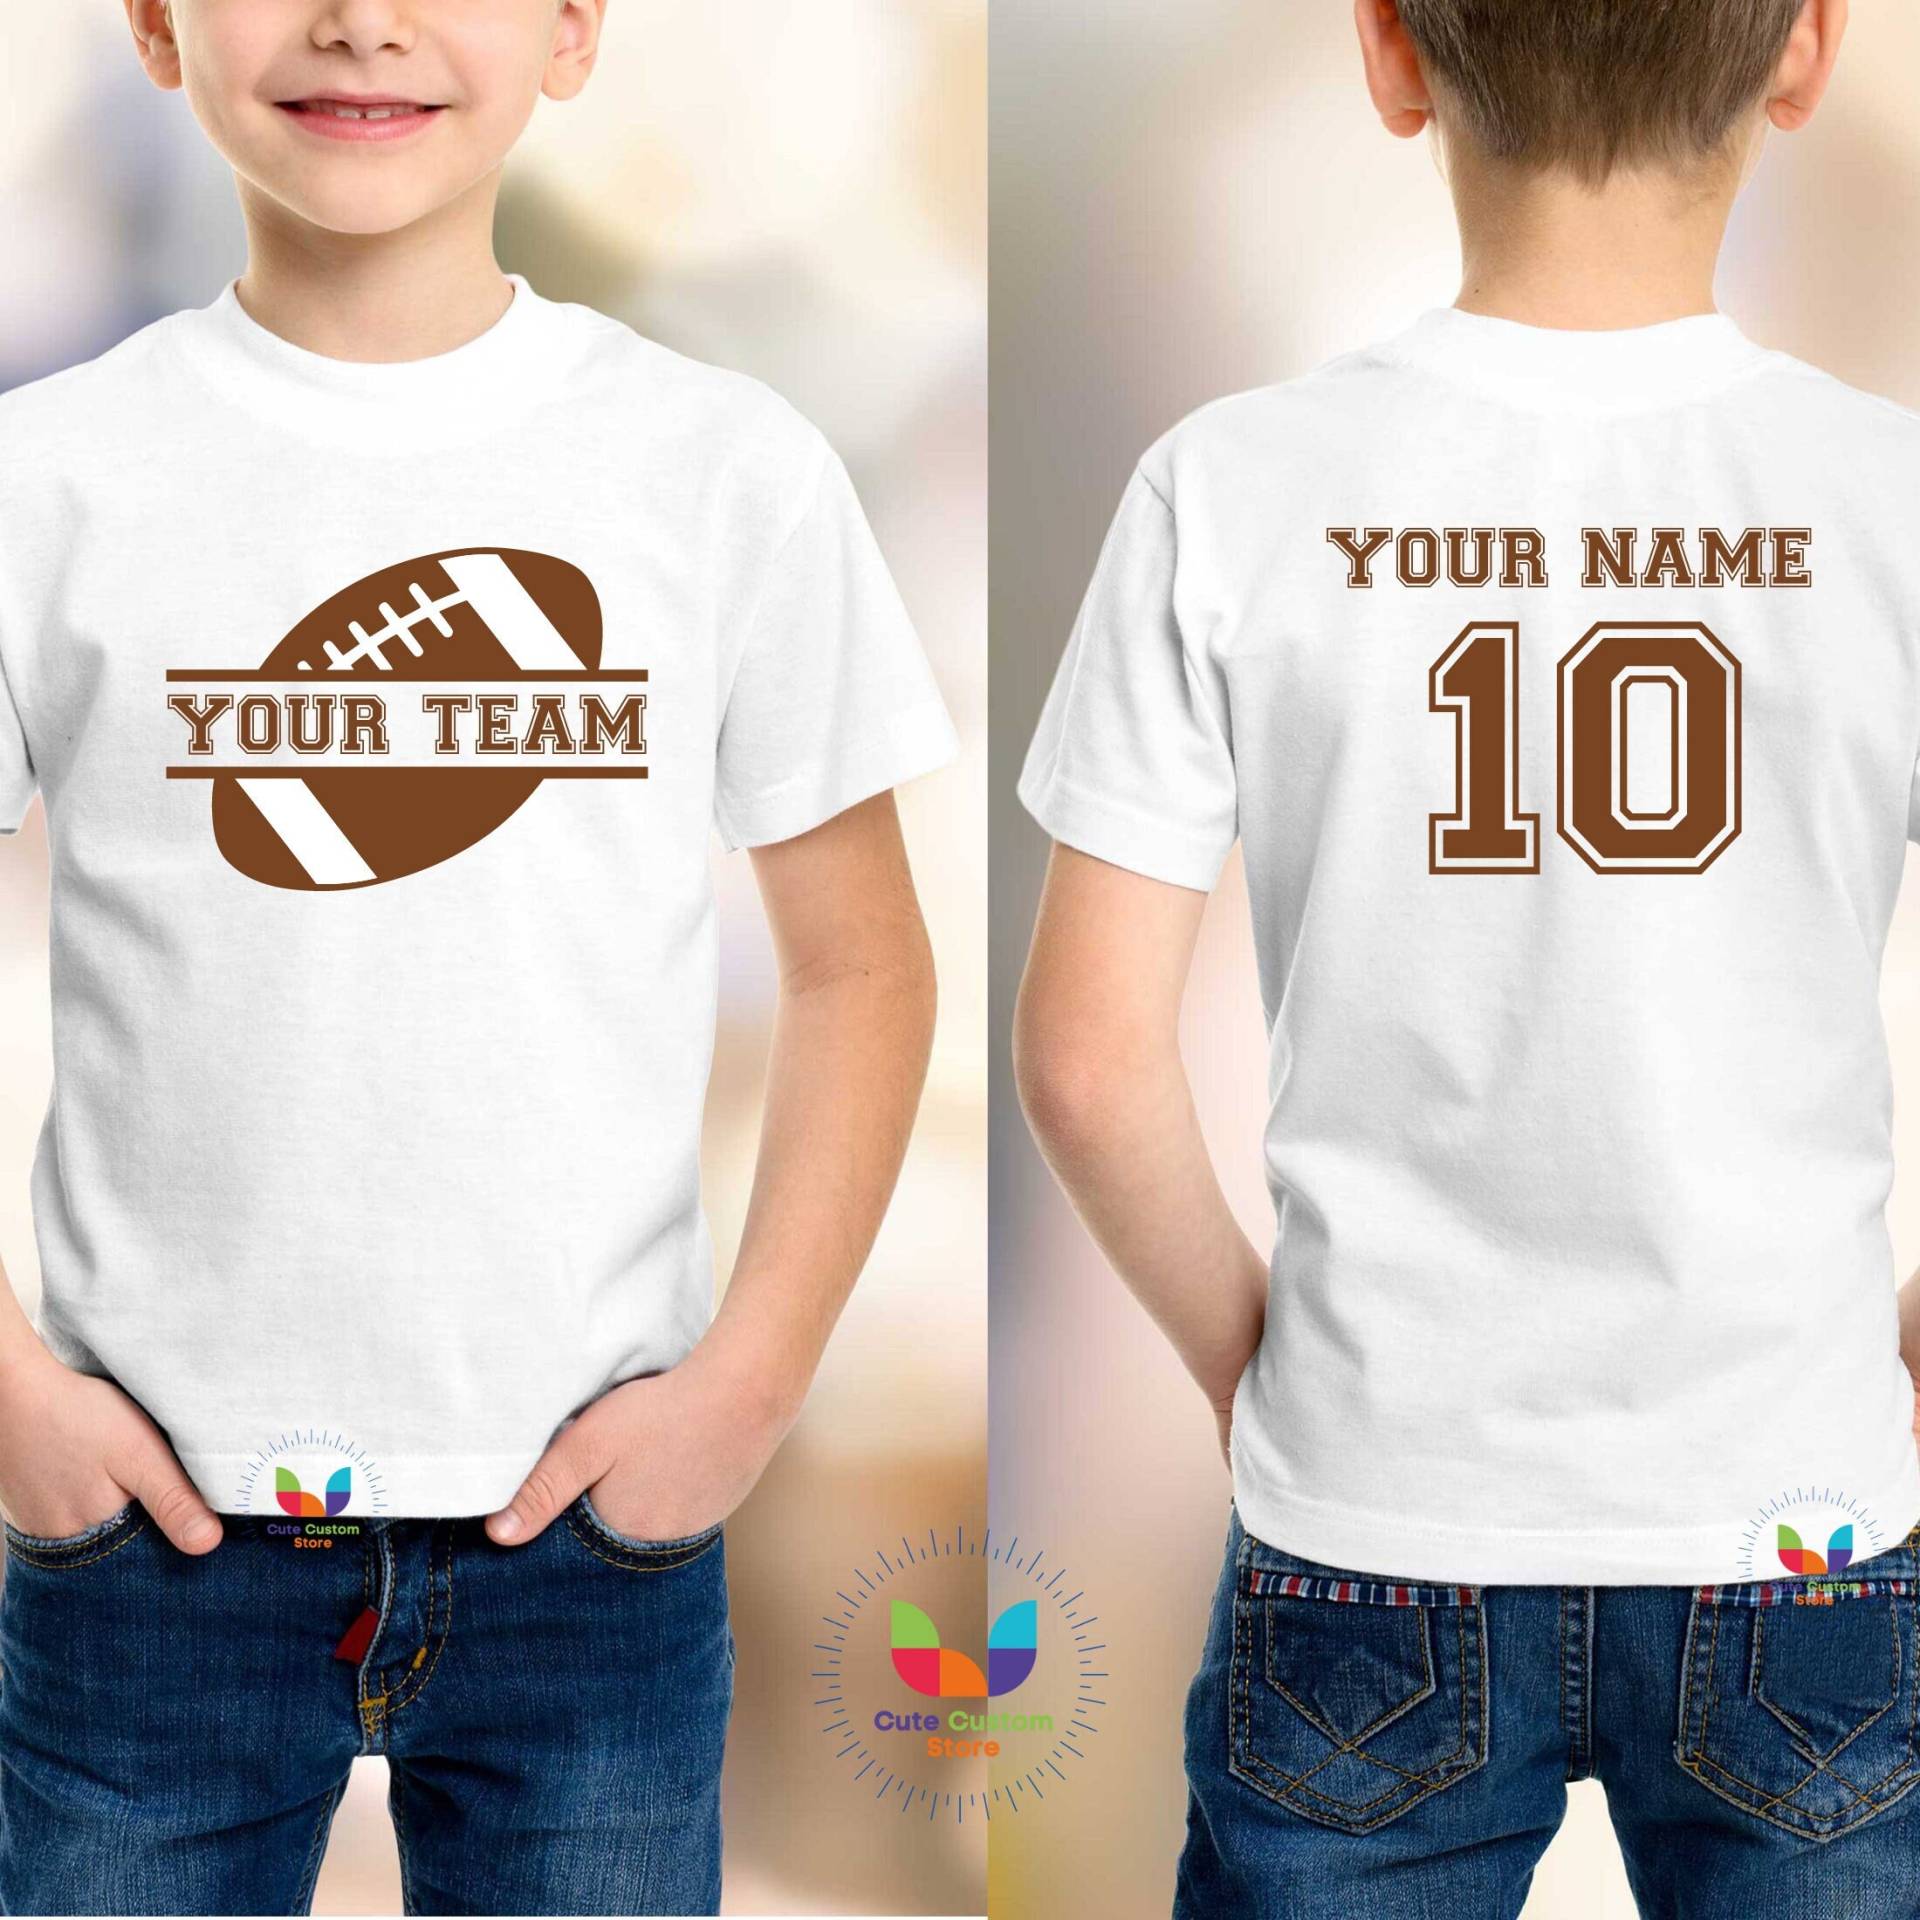 Jugend-Geburtstags-Fußball-Shirt, Individuelles Jugend-Fußball-T-Shirt, Doppelseitiges Jugend-Shirt, Jungen-Mädchen-Shirt Mit Namen, Alter Oder von CuteCustomStore